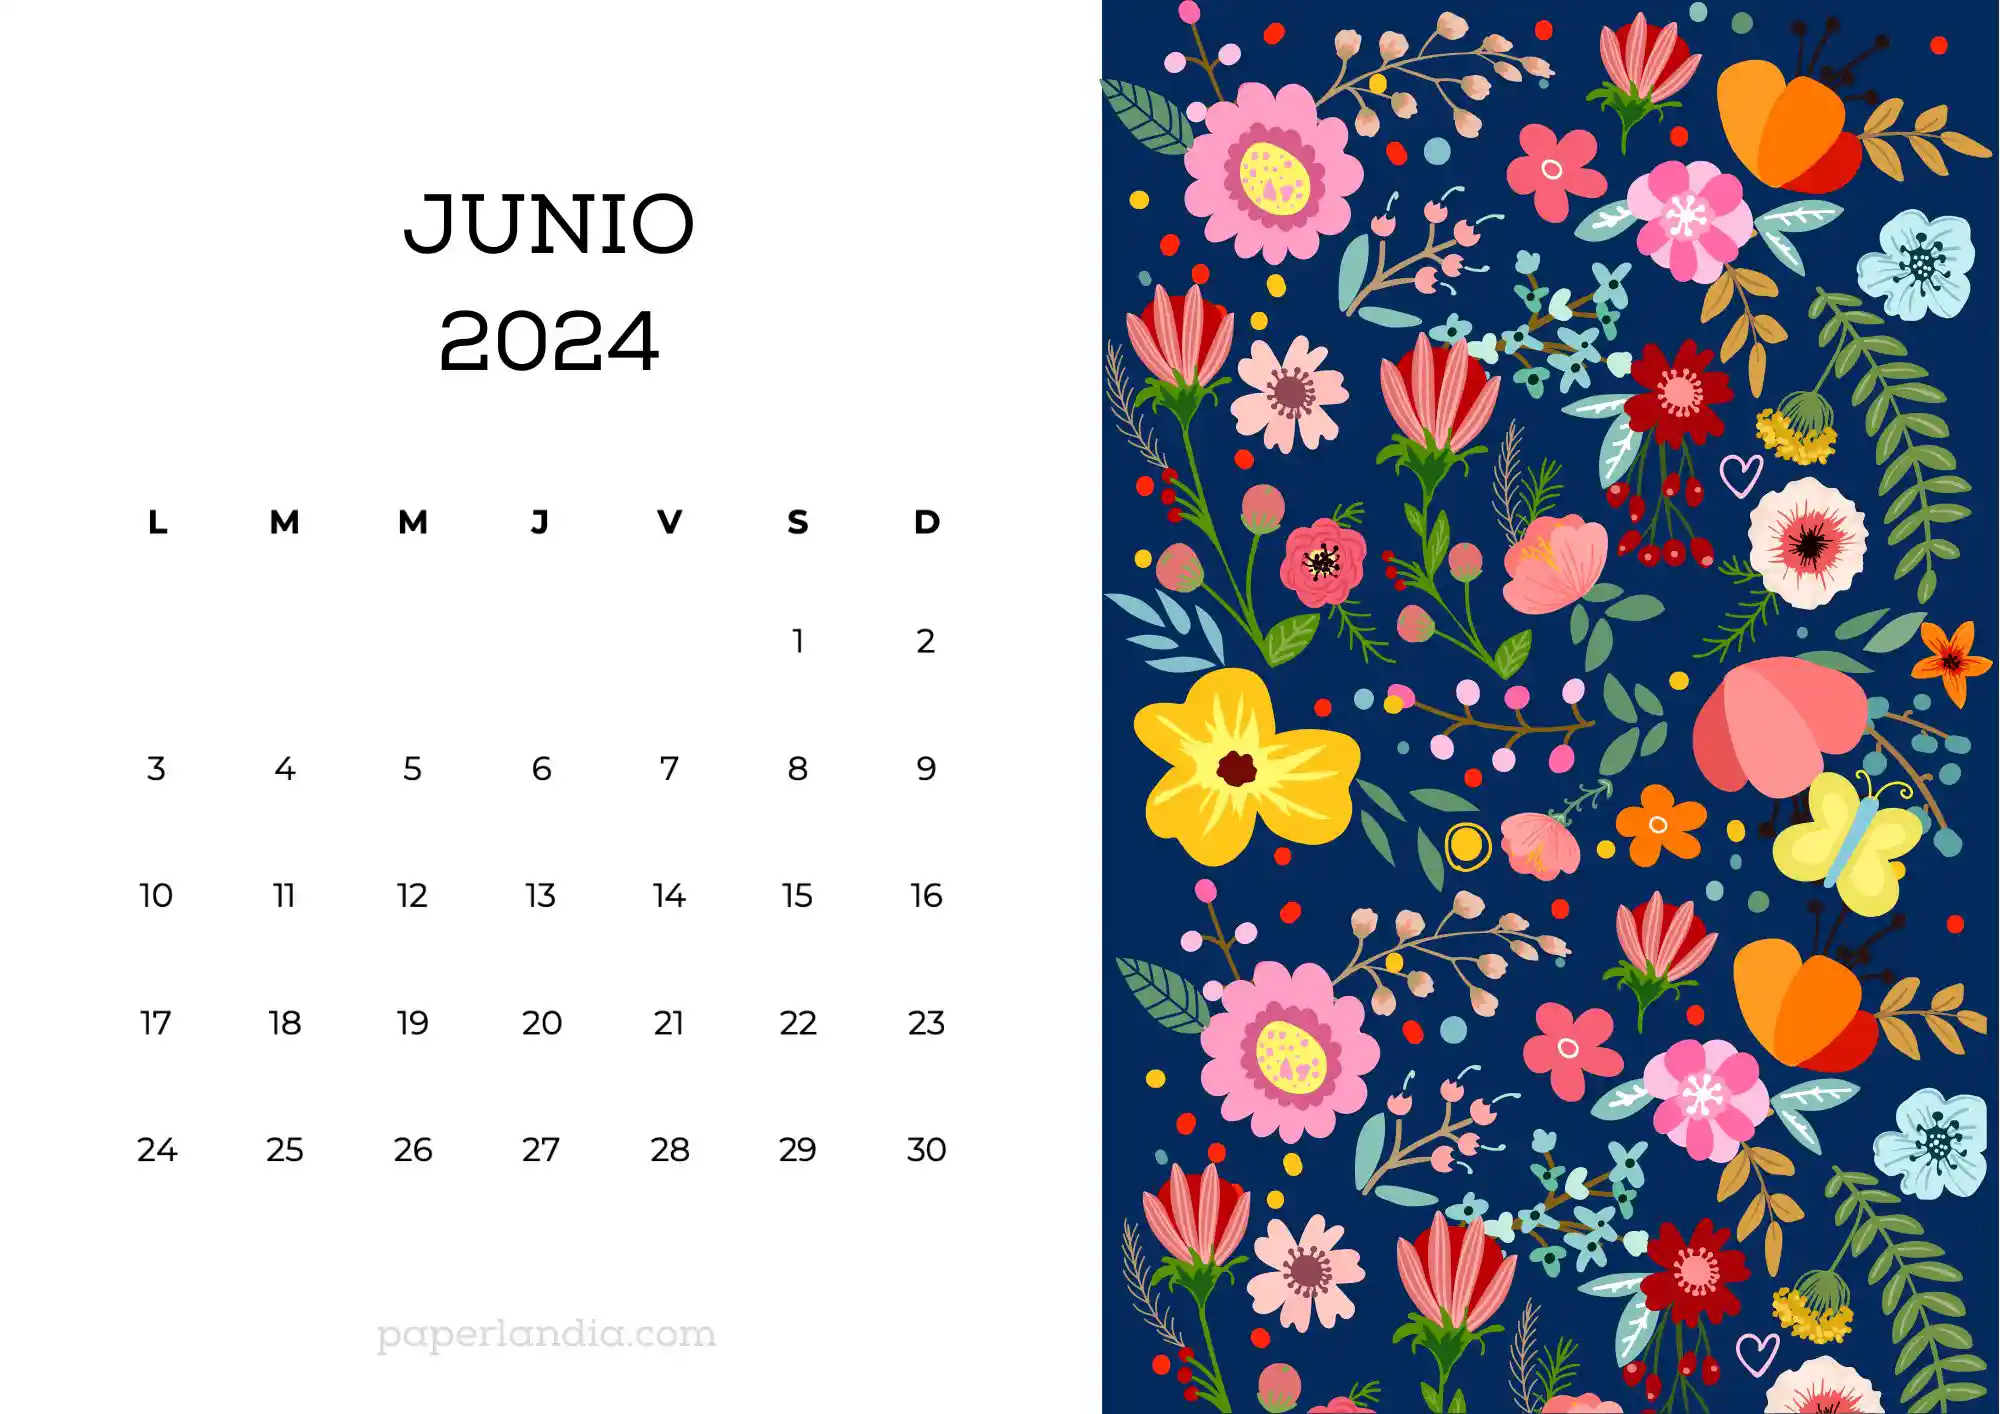 Calendario junio 2024 horizontal con flores escandinavas fondo azul